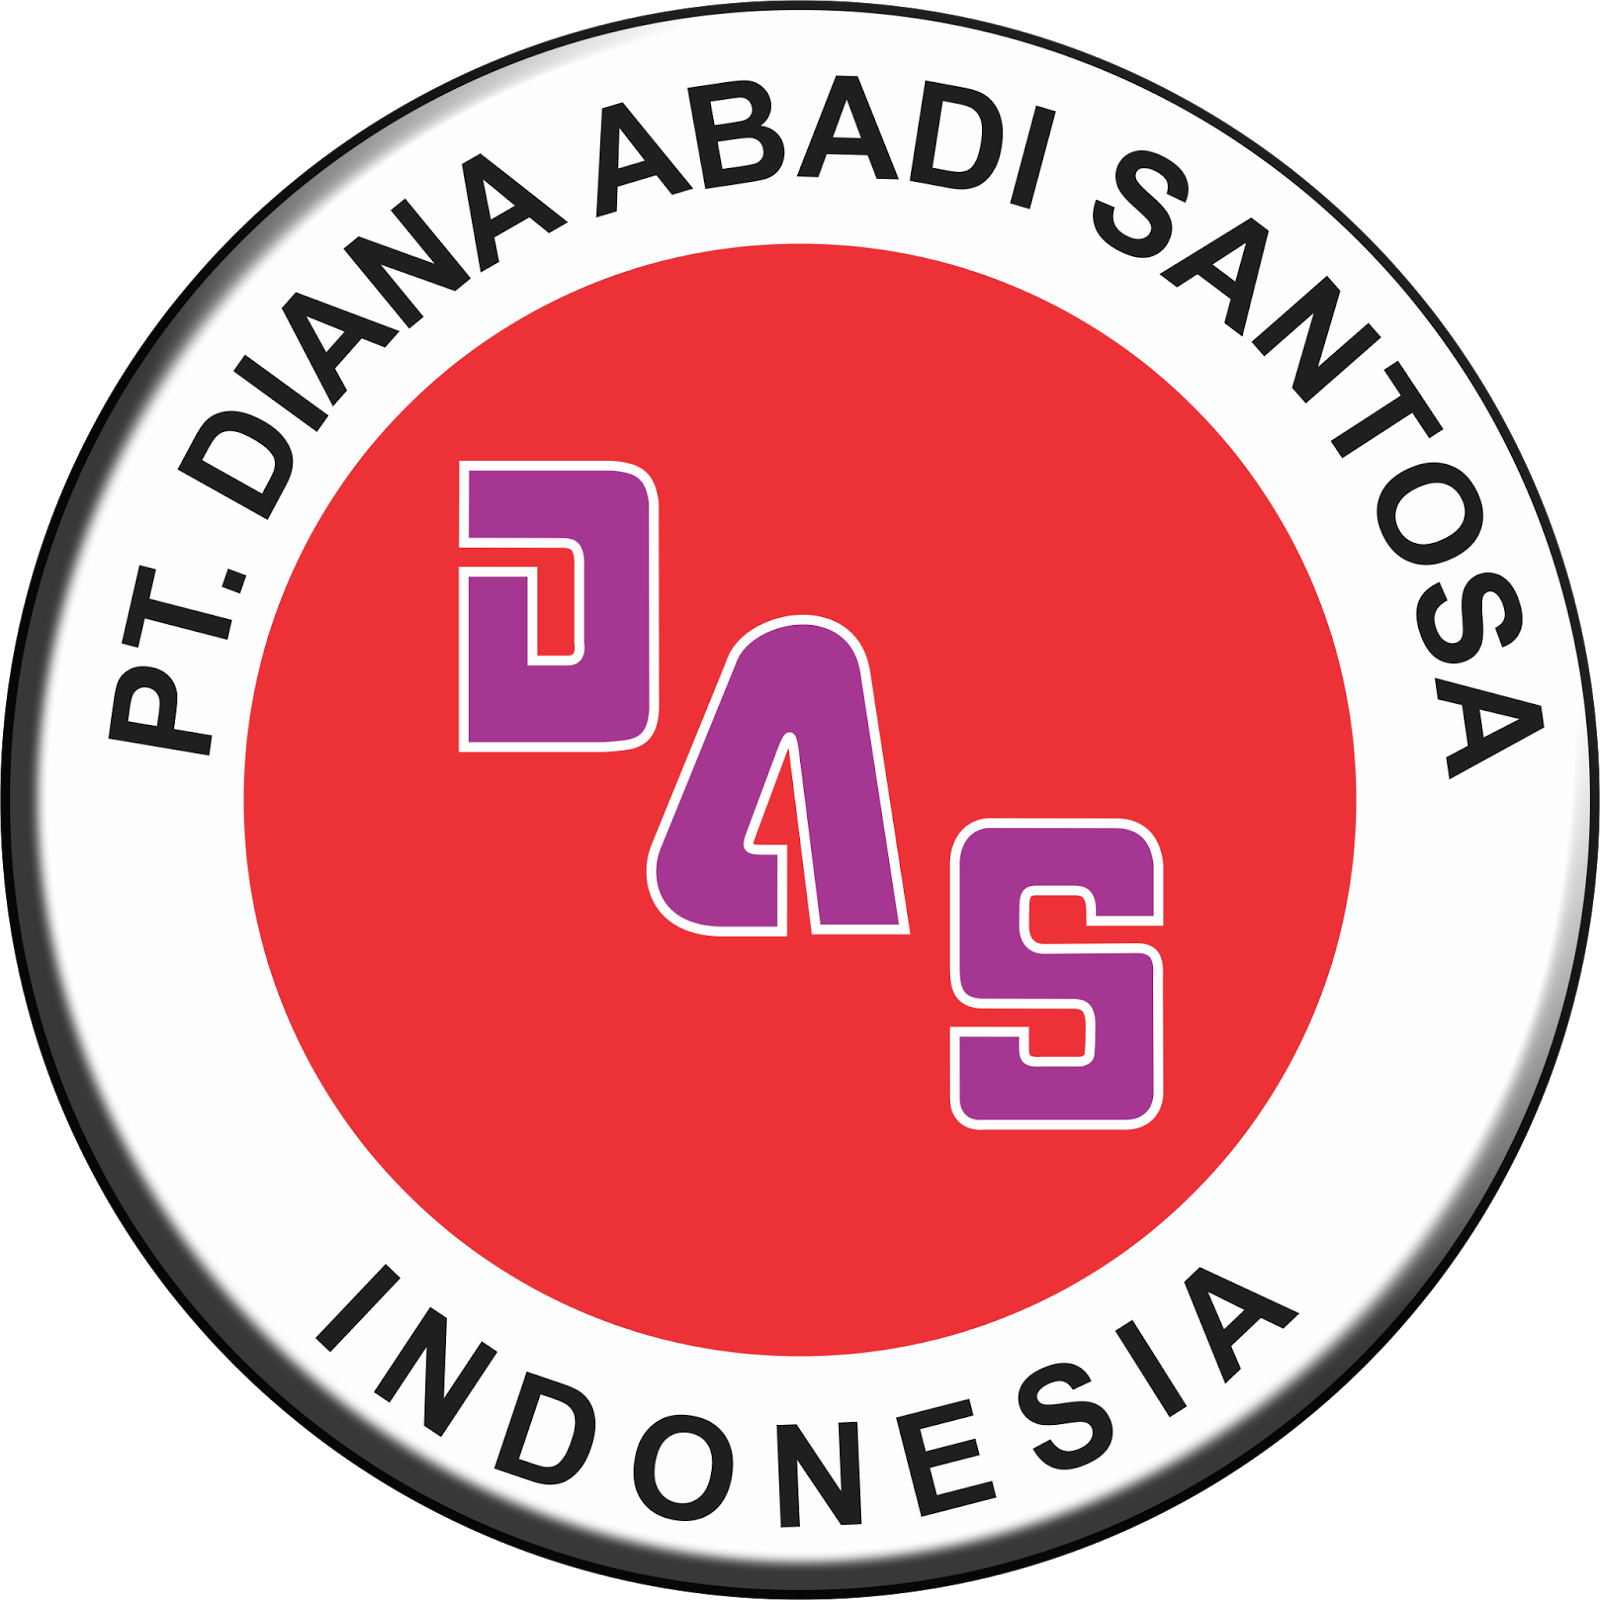 Lowongan Kerja Untuk Lulusan Smp - Lowongan Kerja Jakarta